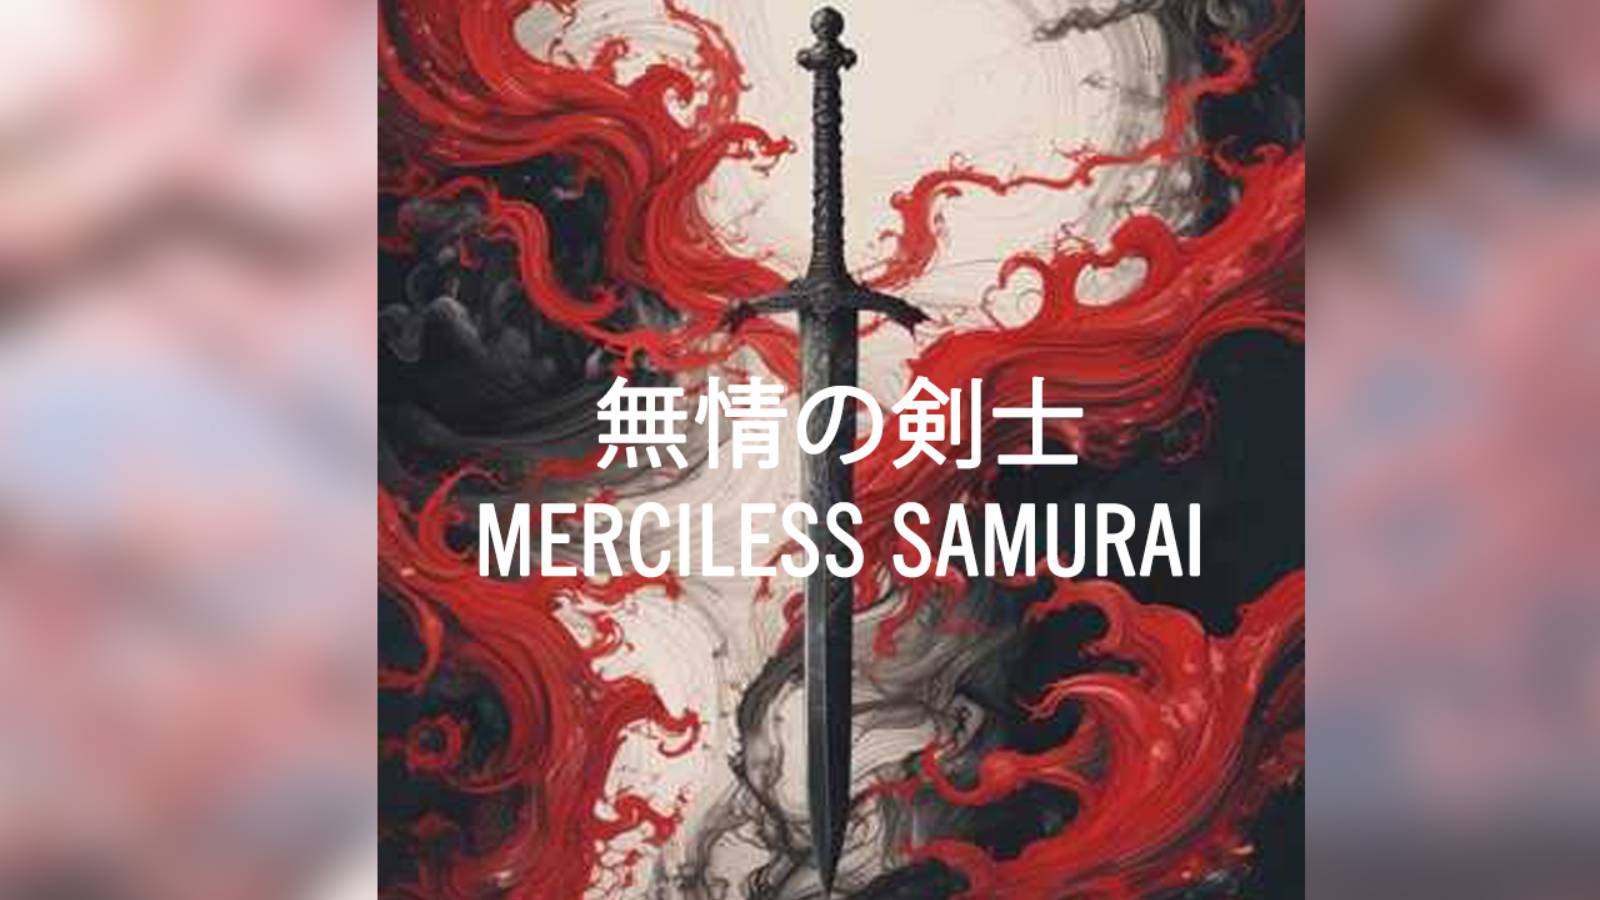 SunoAi - 無情の剣士 (Merciless Samurai)